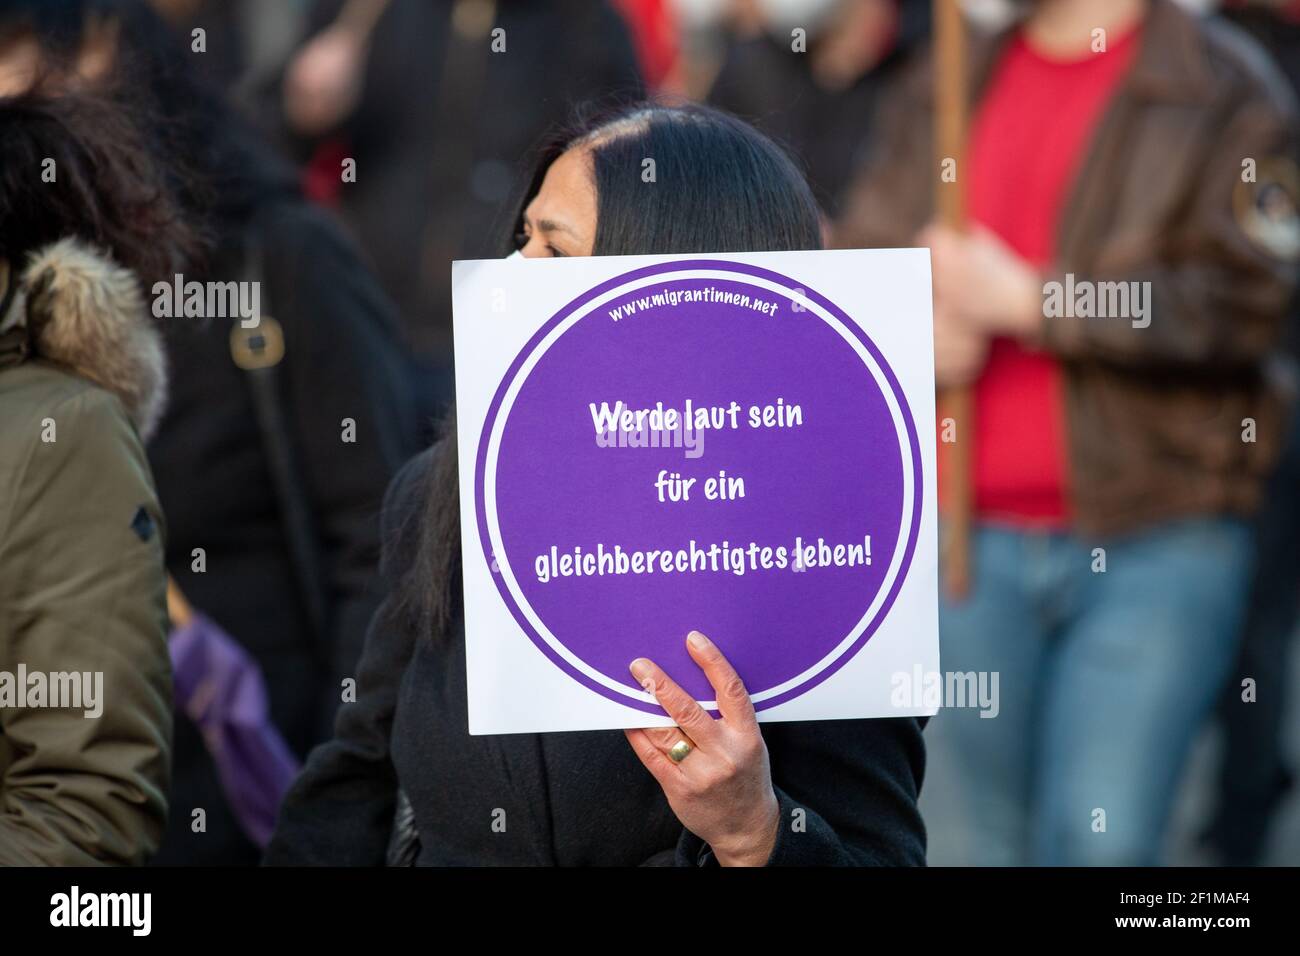 Demonstrantin hält Schild mit der Aufschrift: ' migrantinnen.net Werde laut sein für ein gleichberechtigtes Leben! ' Am Weltfrauentag, dem 8.3.2021 haben sich in München um die 1000 Menschen versammelt, um für das Recht auf Schwangerschaftsabbrüche, gegen den Gender-Pay-Gap, Sexismus und Femizide zu demonstrieren. - On the international women's day March 8 2021 around 1000 people joined a demonstration in Munich, Germany to protest against sexism, the gender-pay-gap and femicides. (Photo by Alexander Pohl/Sipa USA) Stock Photo